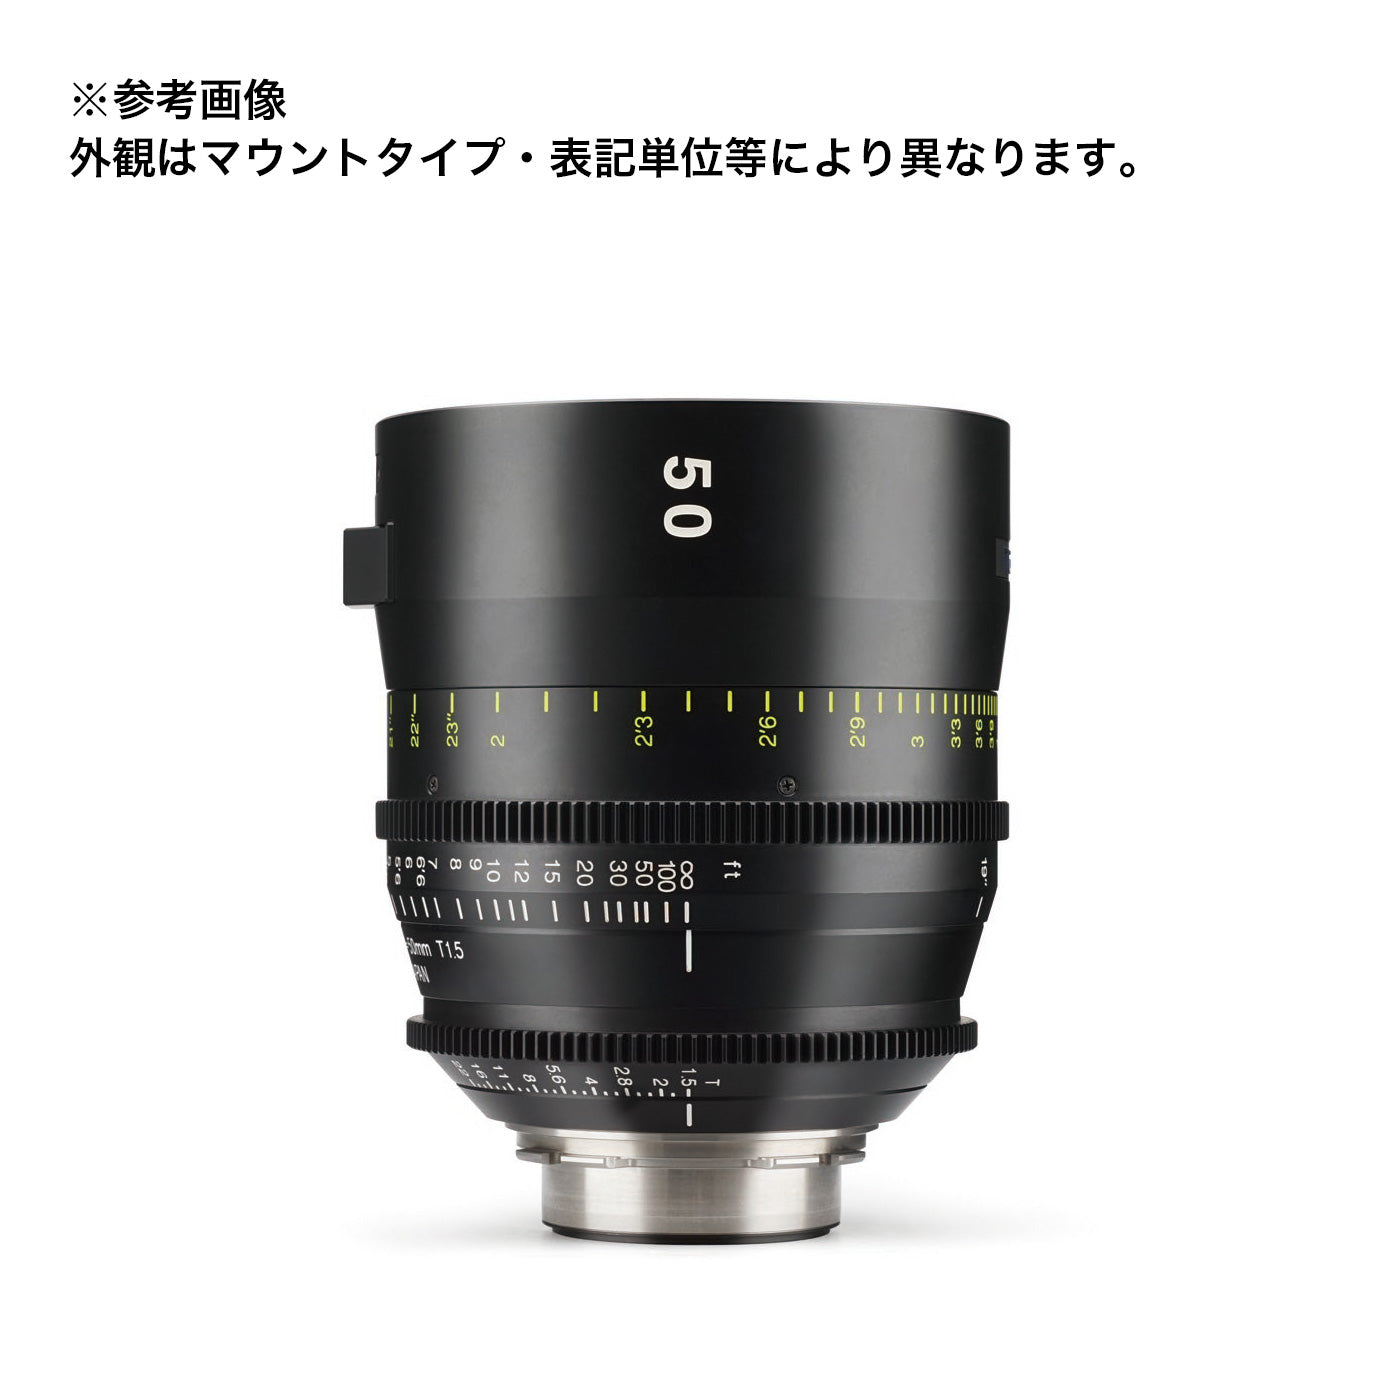 Tokina(トキナー) シネマプライムレンズ VISTA 50mm T1.5 CINEMA LENS EFマウント フィート表記 [264101]